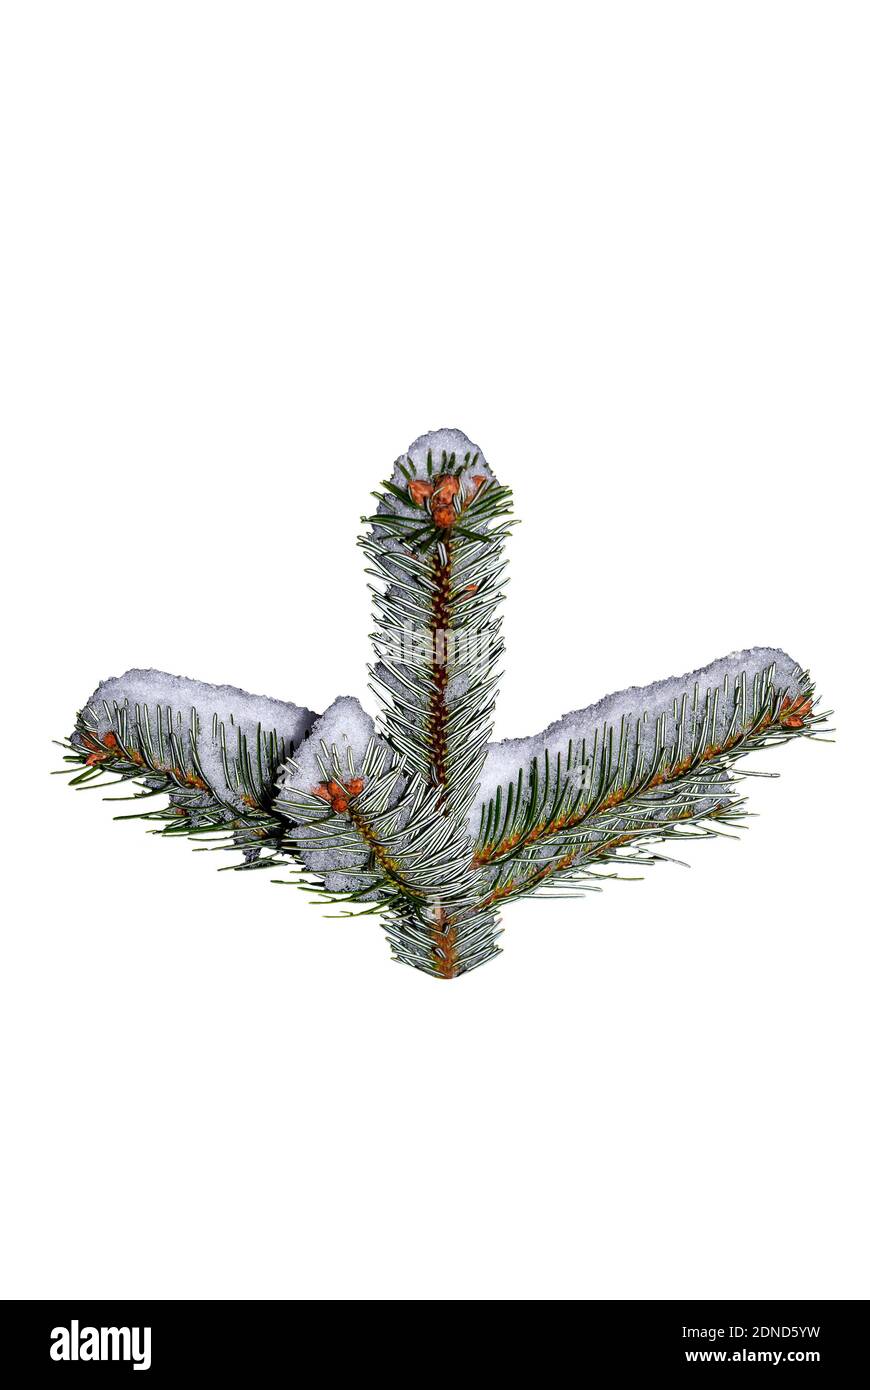 Symmetrischer Tannenzweig im Schnee - Nahaufnahme eines Tannenzweig aus dem Hintergrund geschnitten – Abstraktion - Nordmann FIR (Abies nordmanniana) Stockfoto